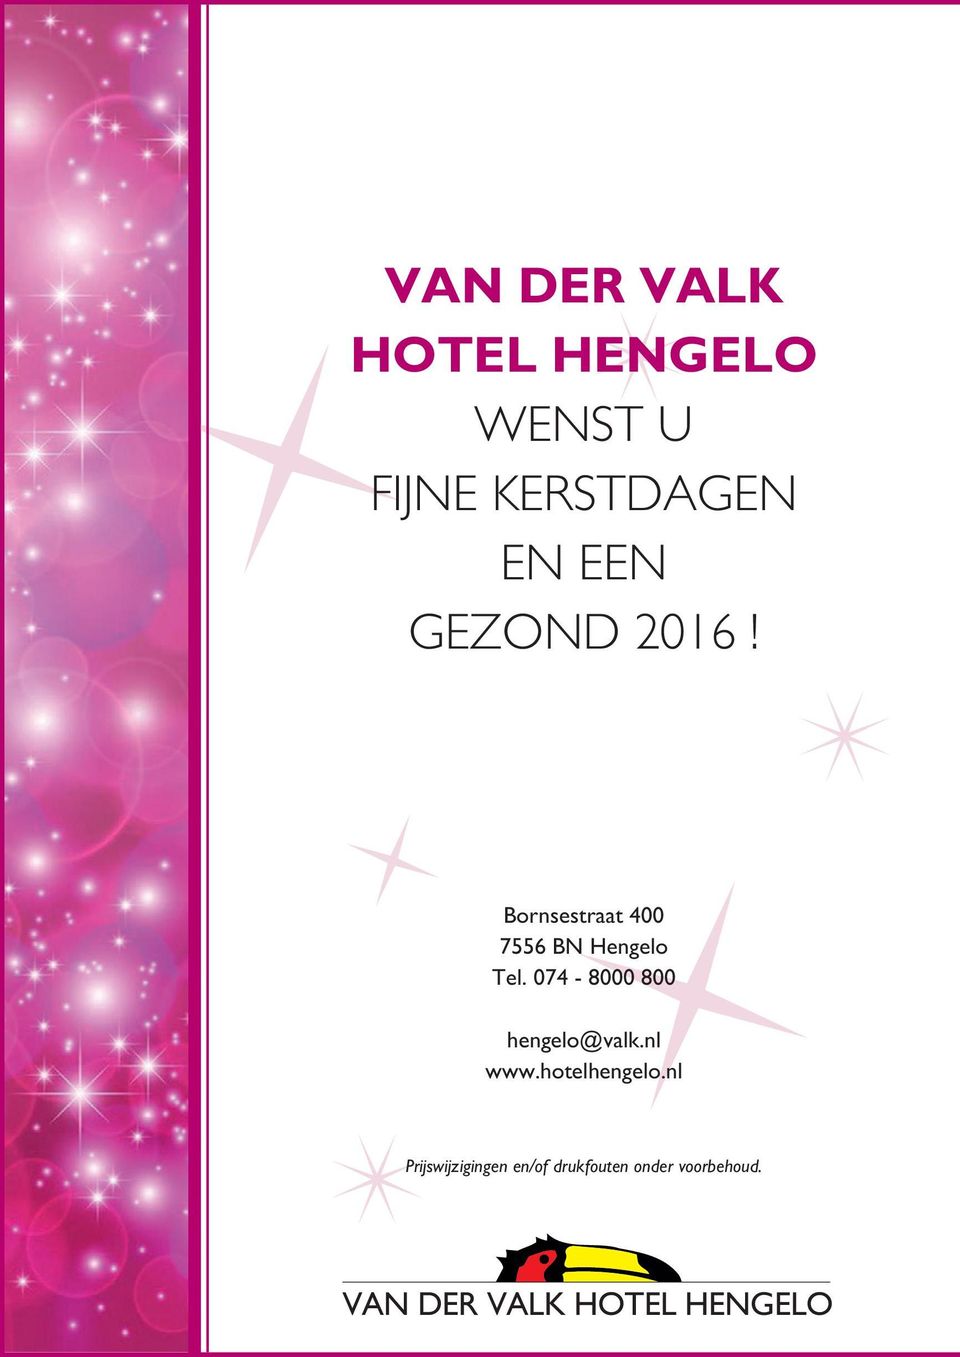 074-8000 800 hengelo@valk.nl www.hotelhengelo.